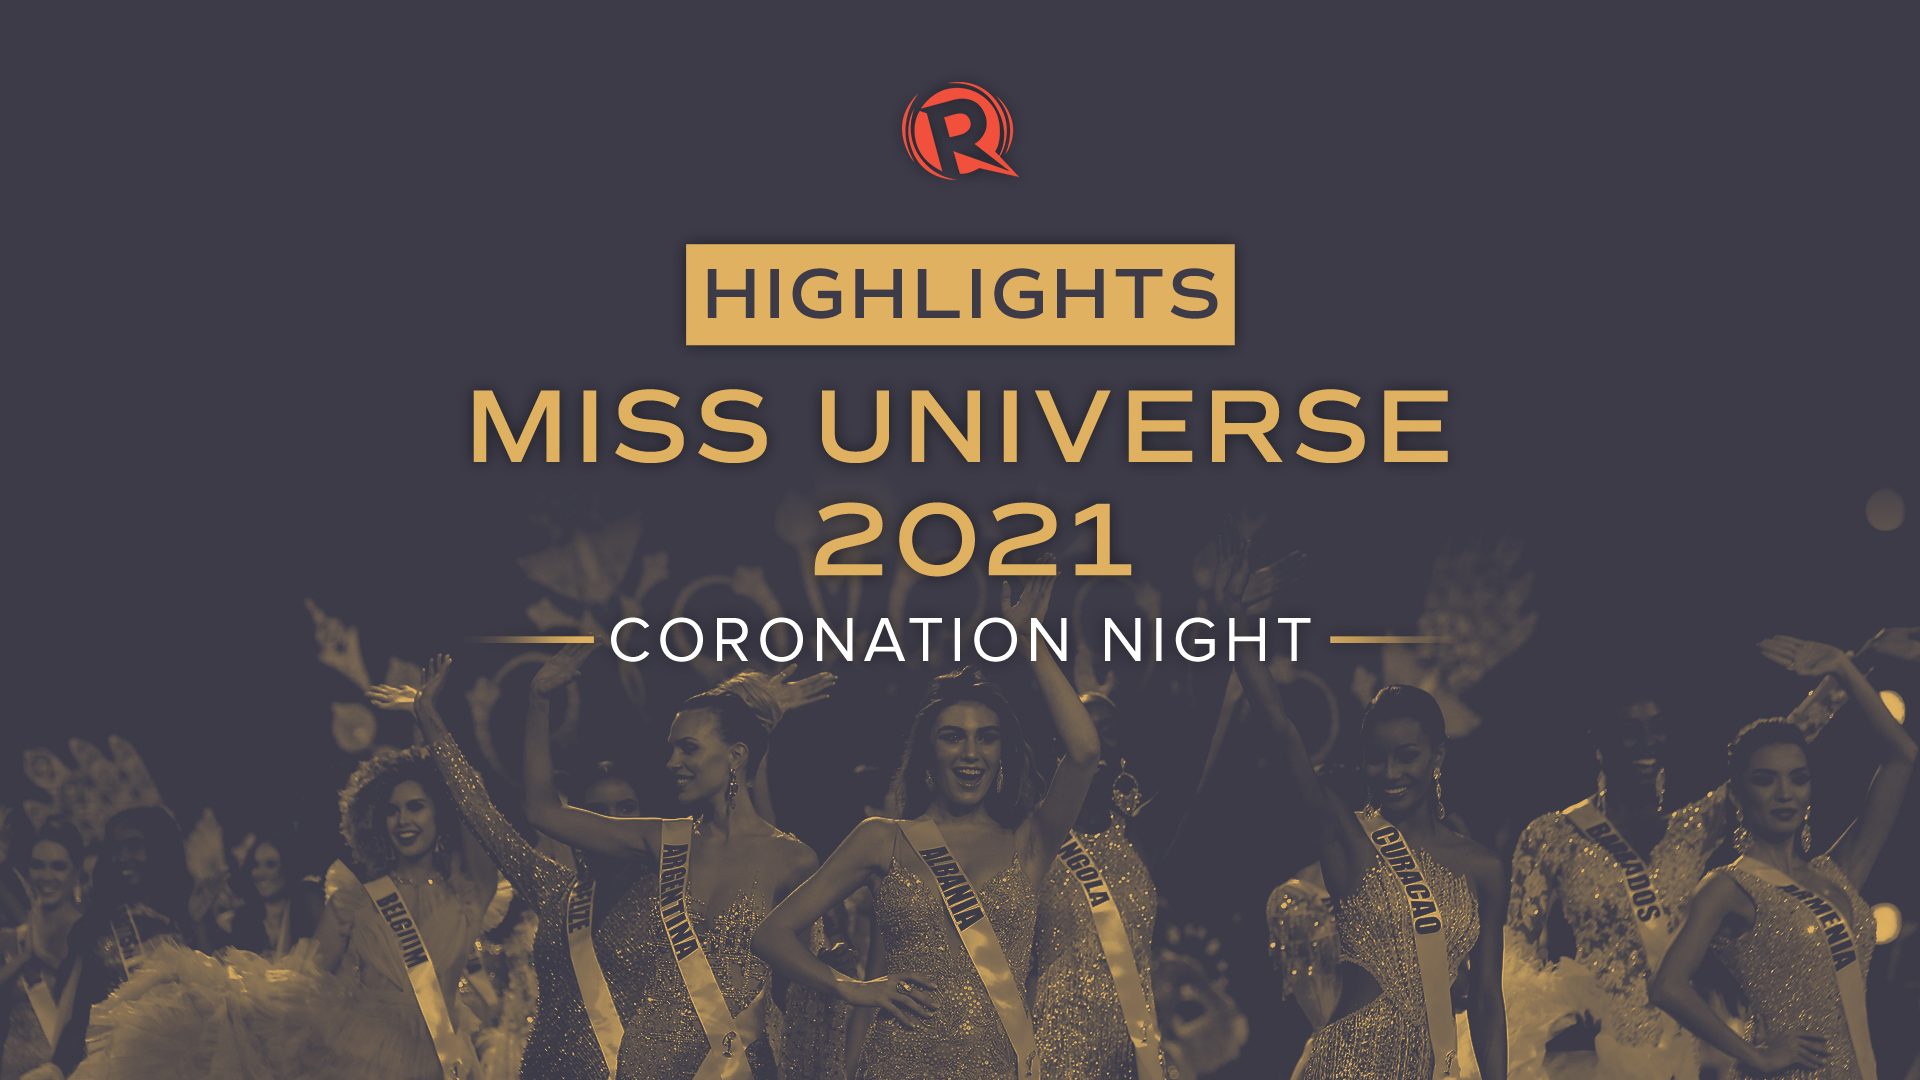 Miss universe 2021 schedule